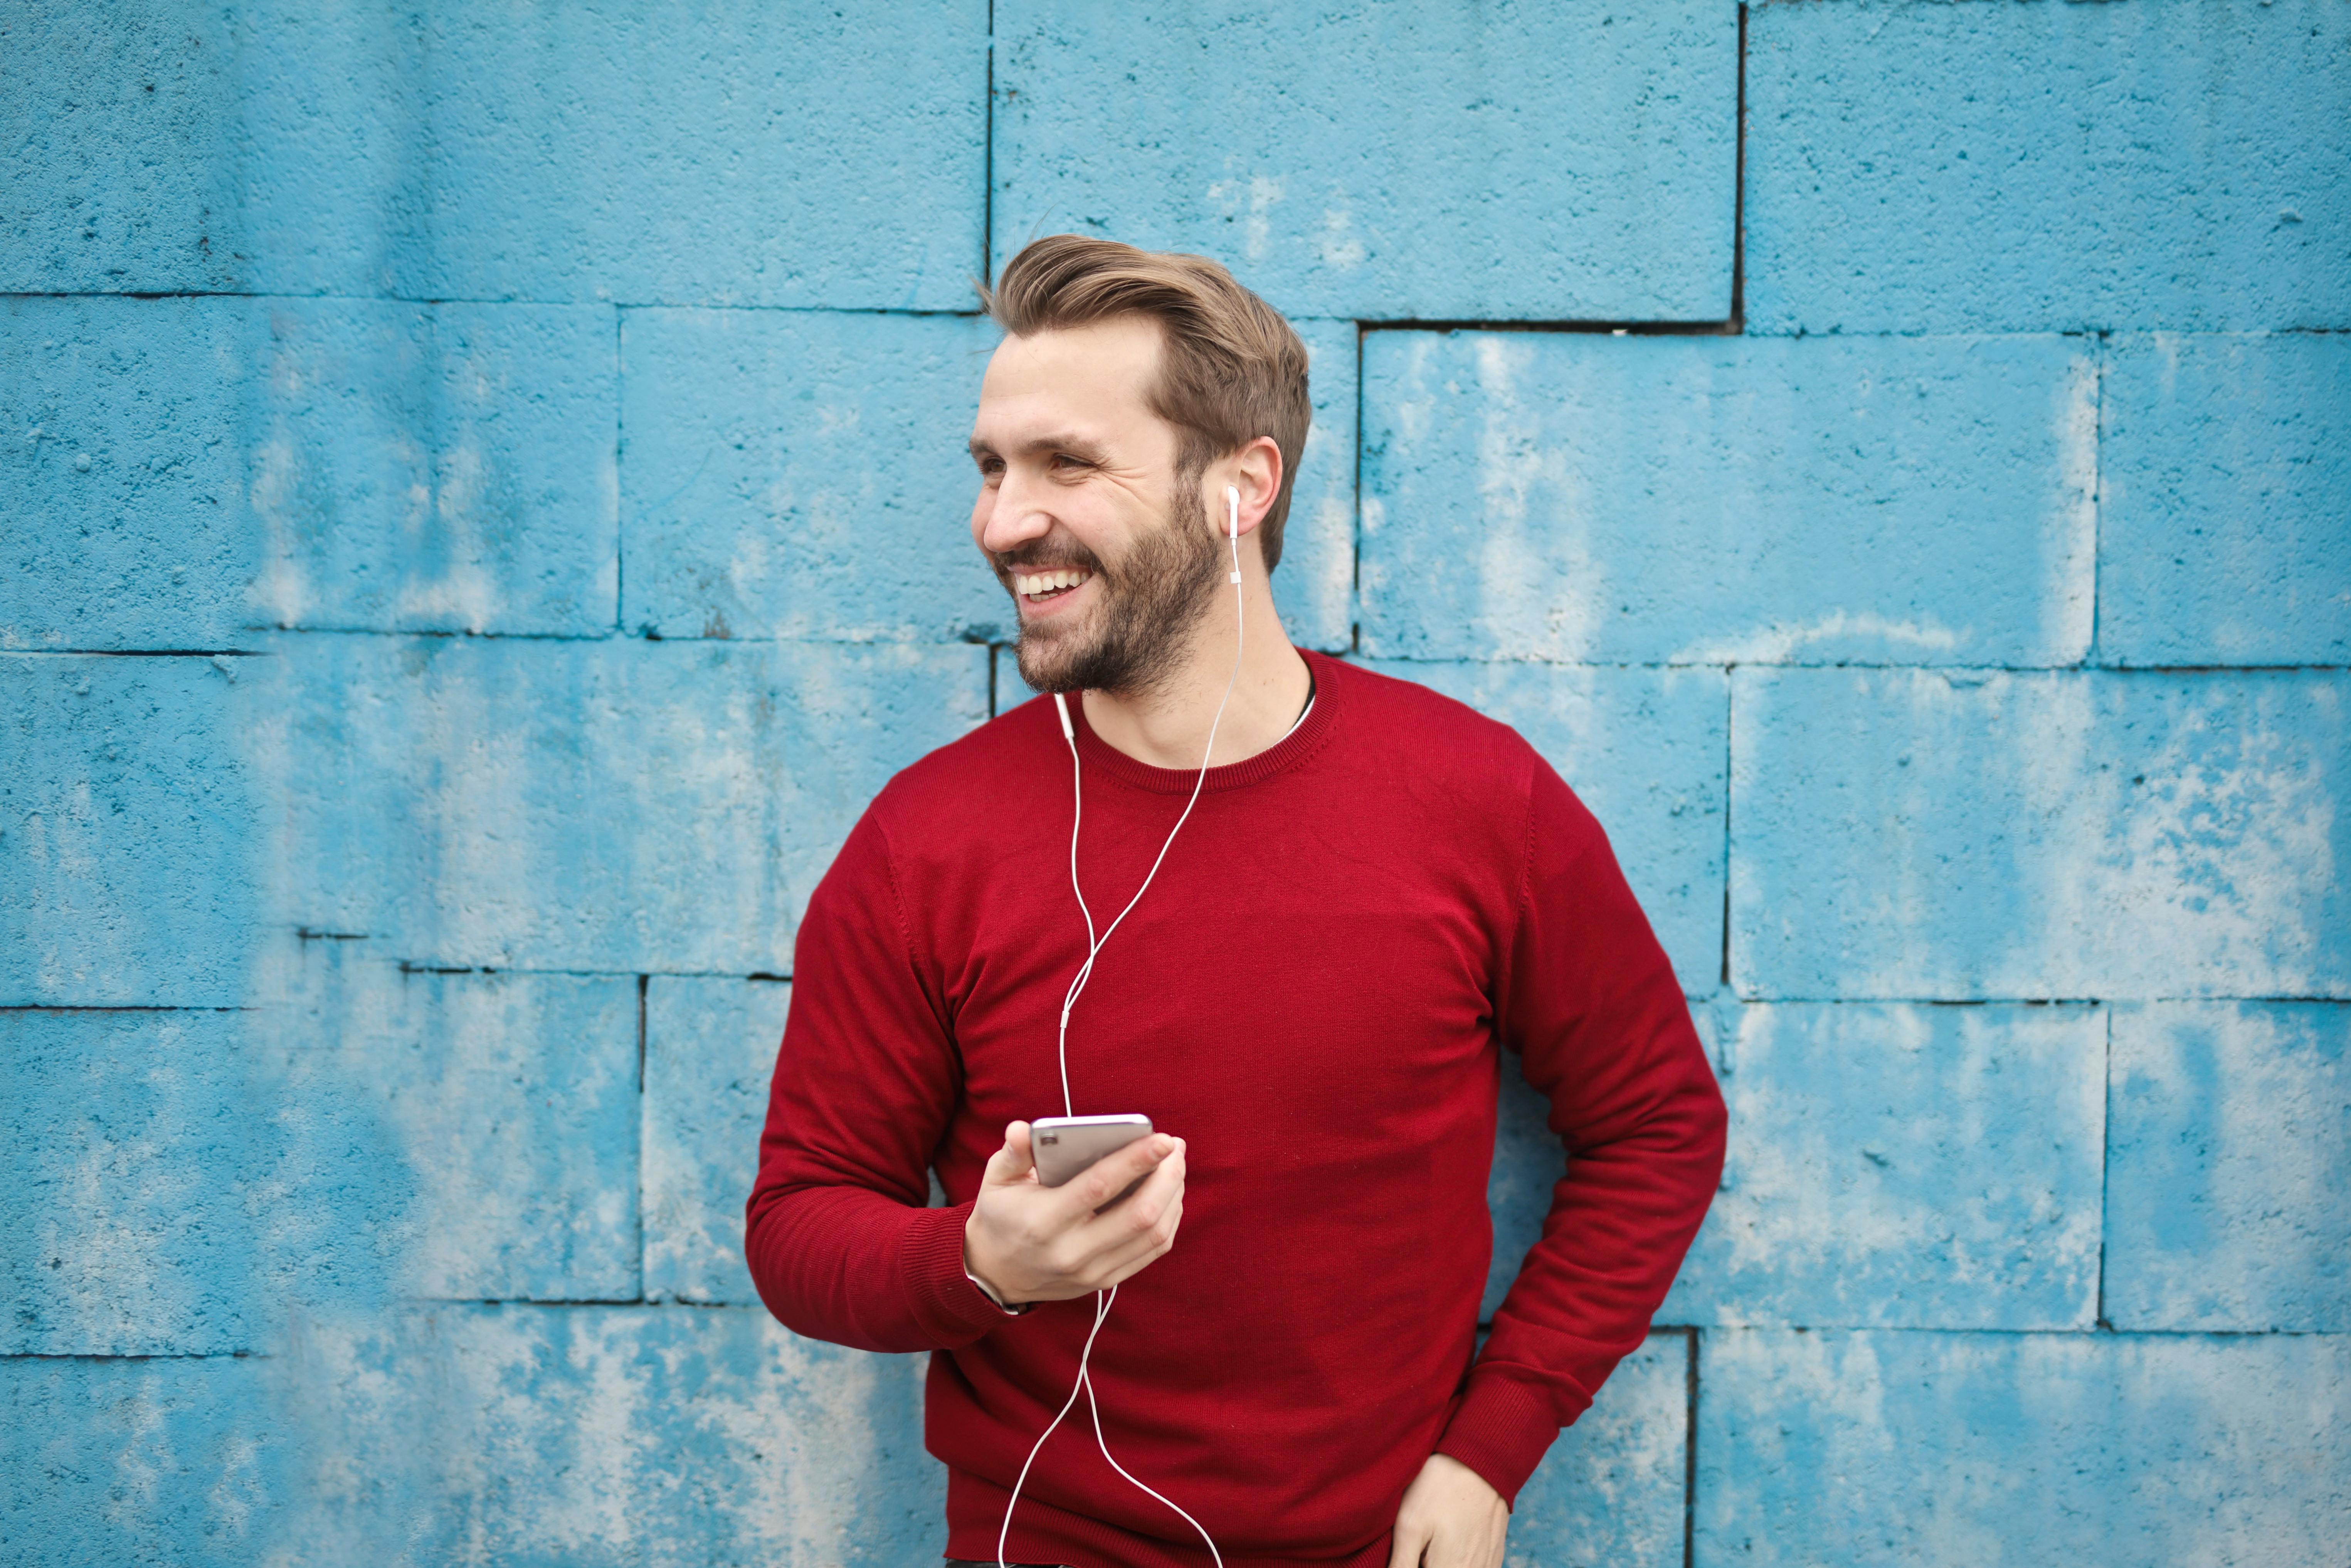 Un hombre seguro de sí mismo escuchando música | Fuente: Pexels